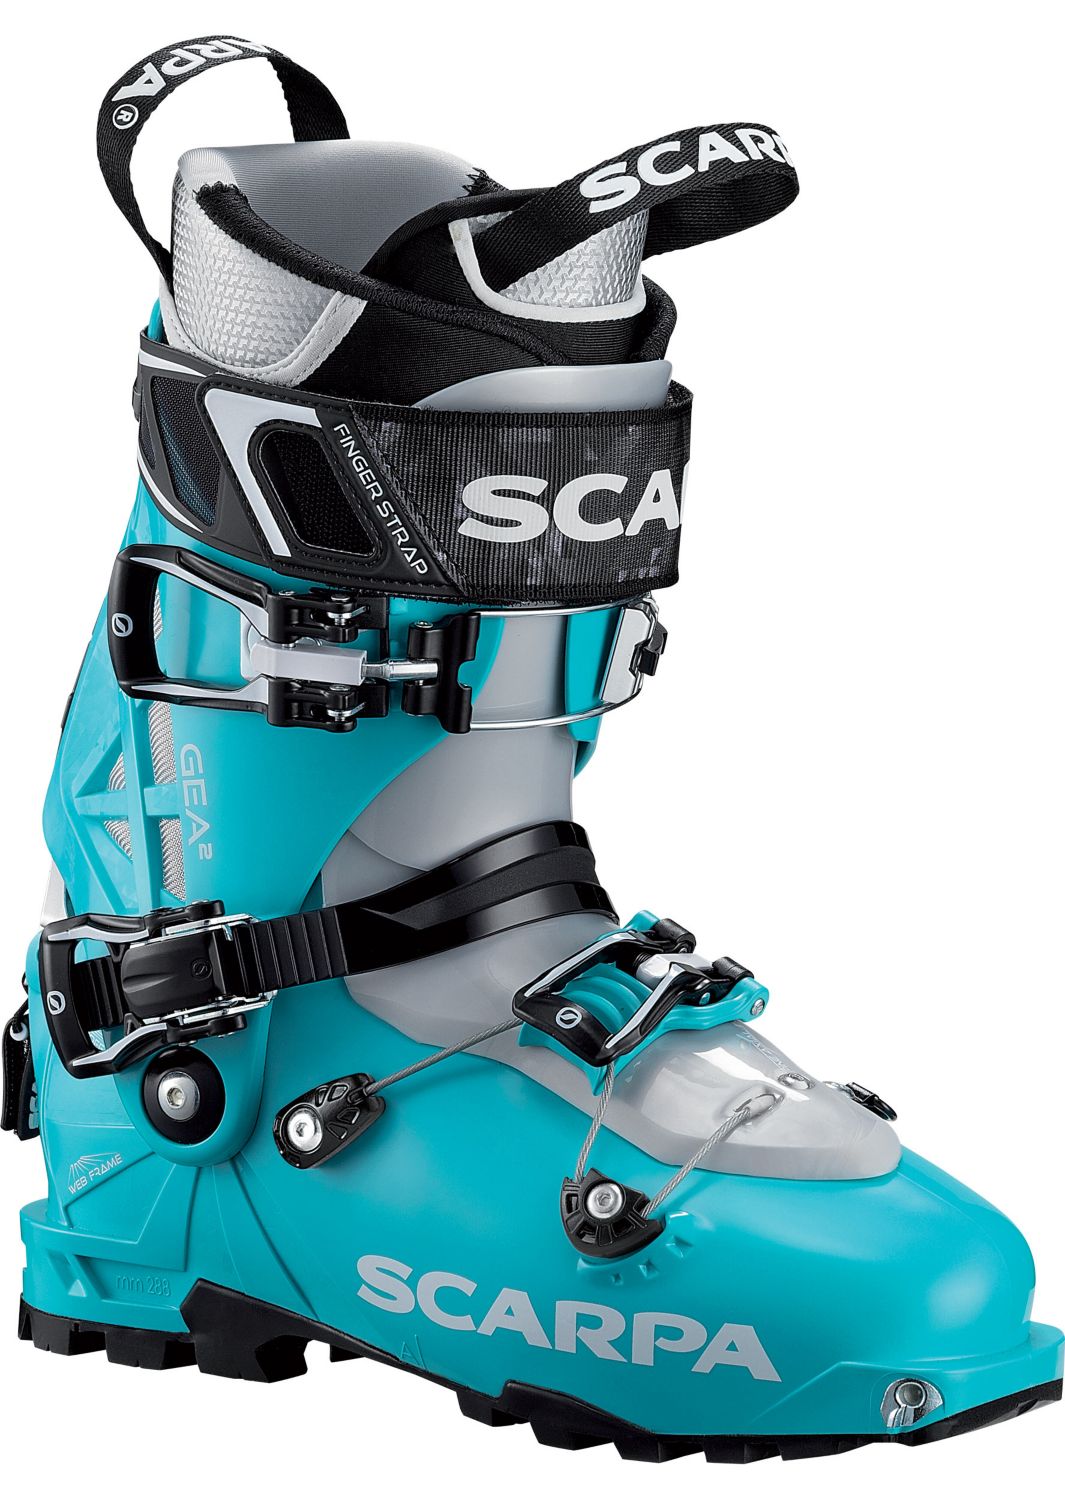 Scarpa Ski Boot Size Chart